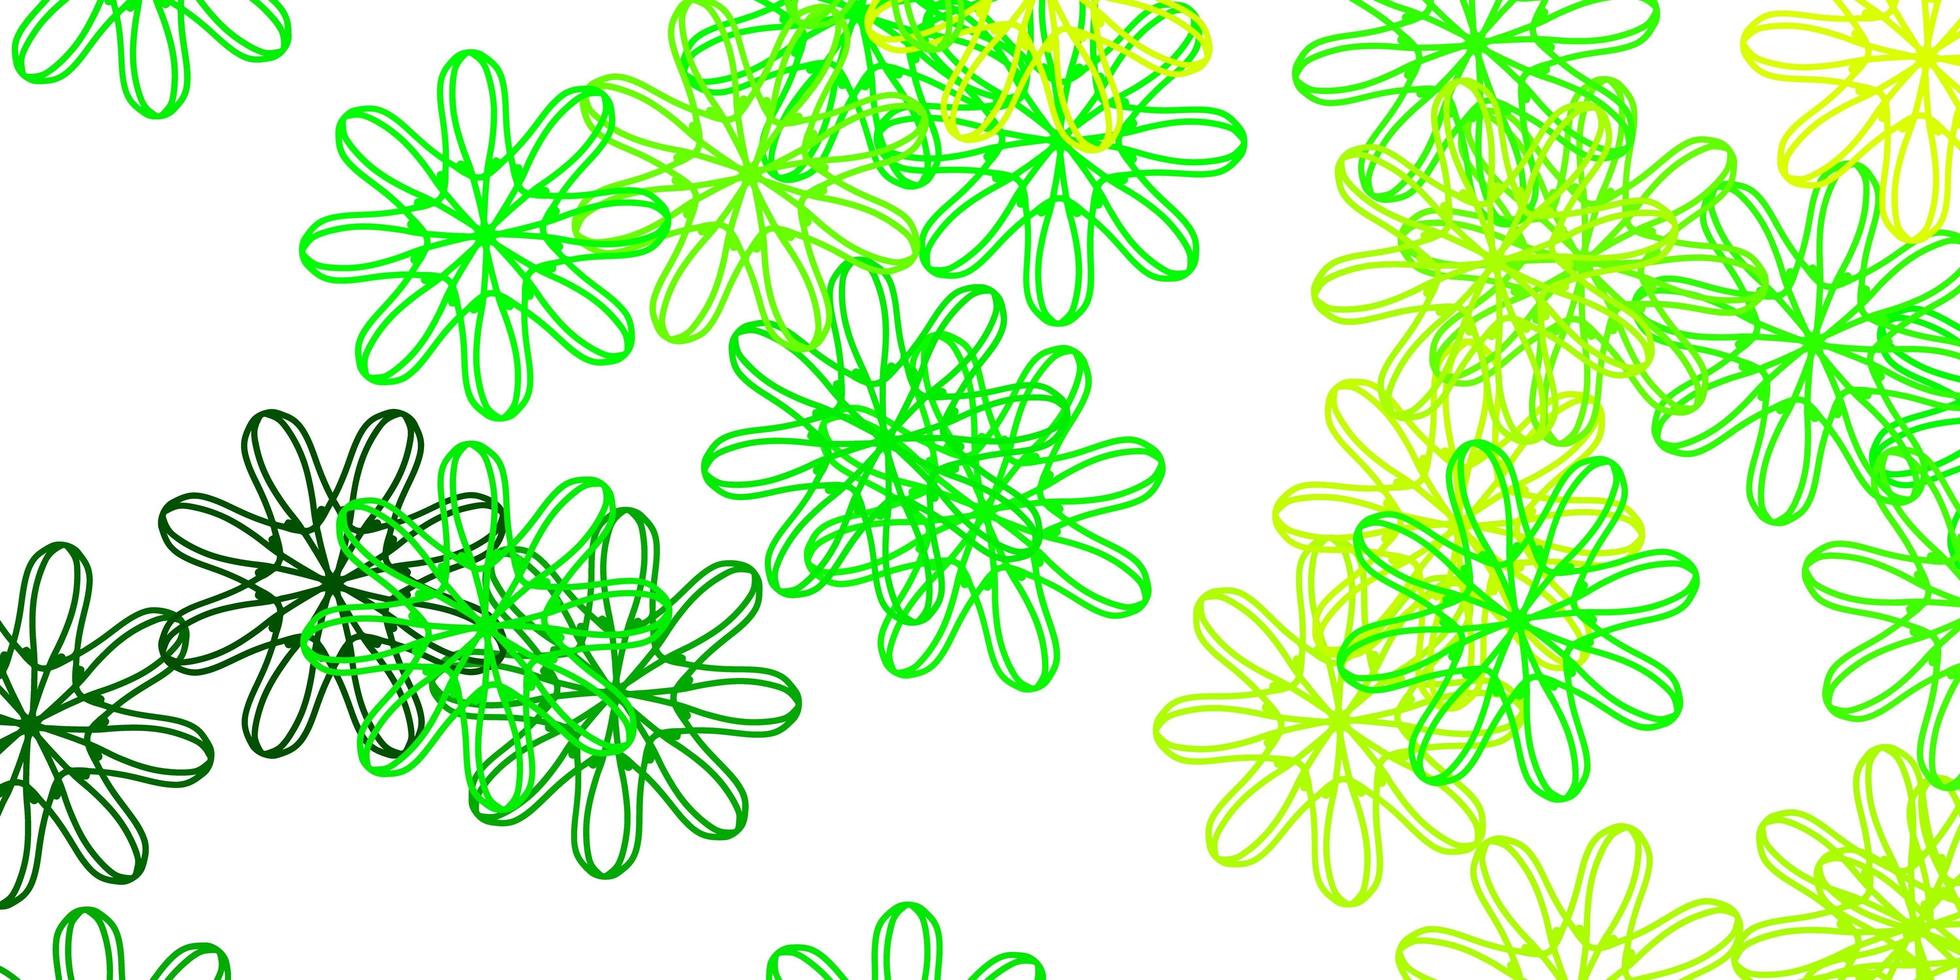 ljusgrön, gul vektor naturlig layout med blommor.